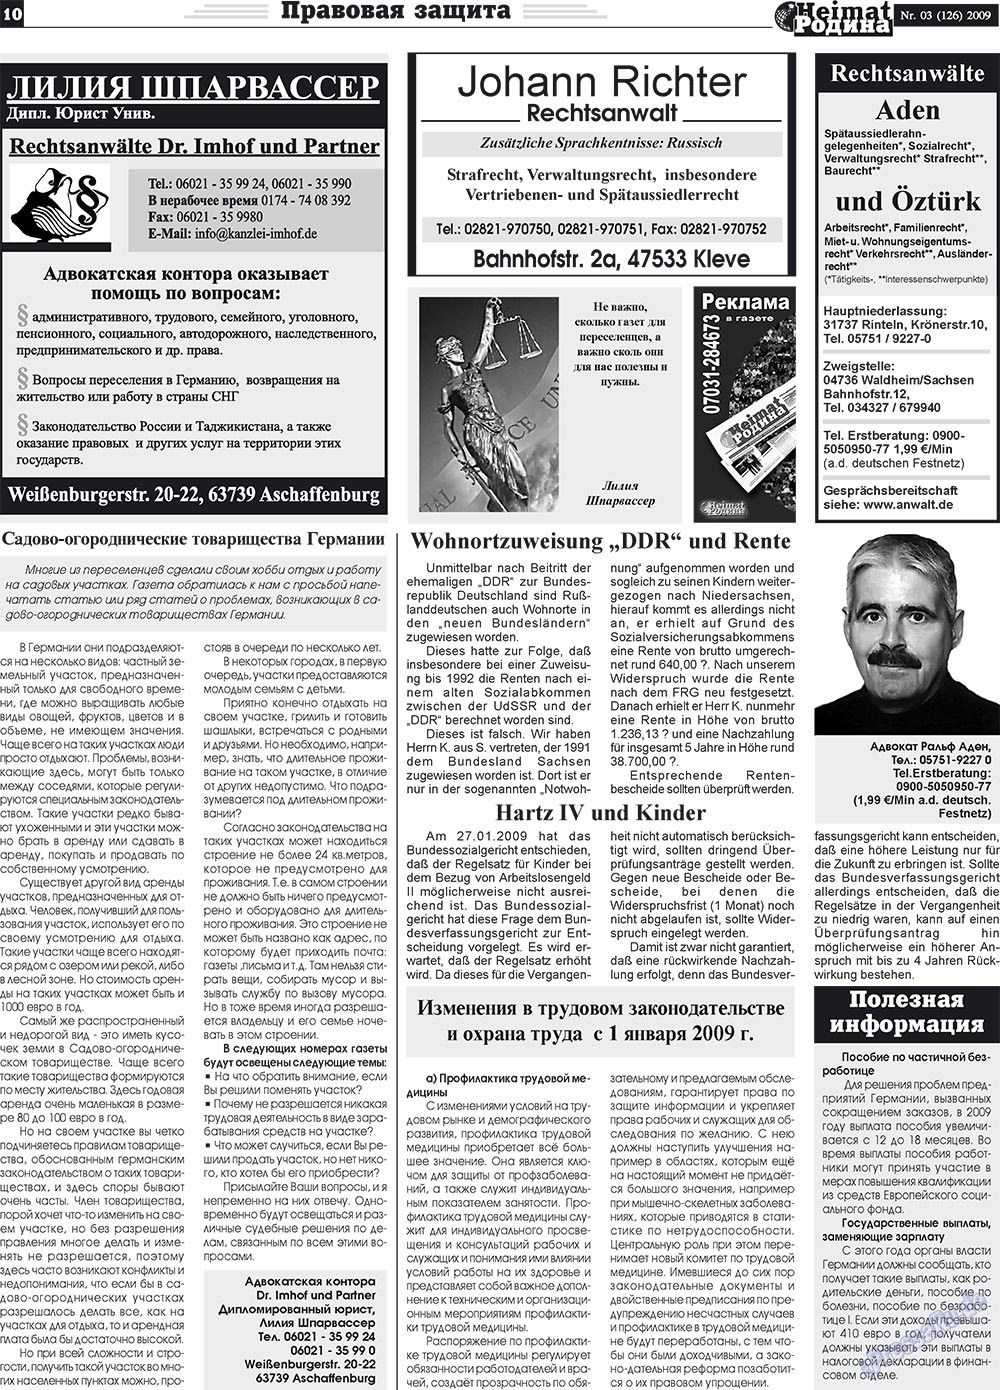 Heimat-Родина (газета). 2009 год, номер 3, стр. 10